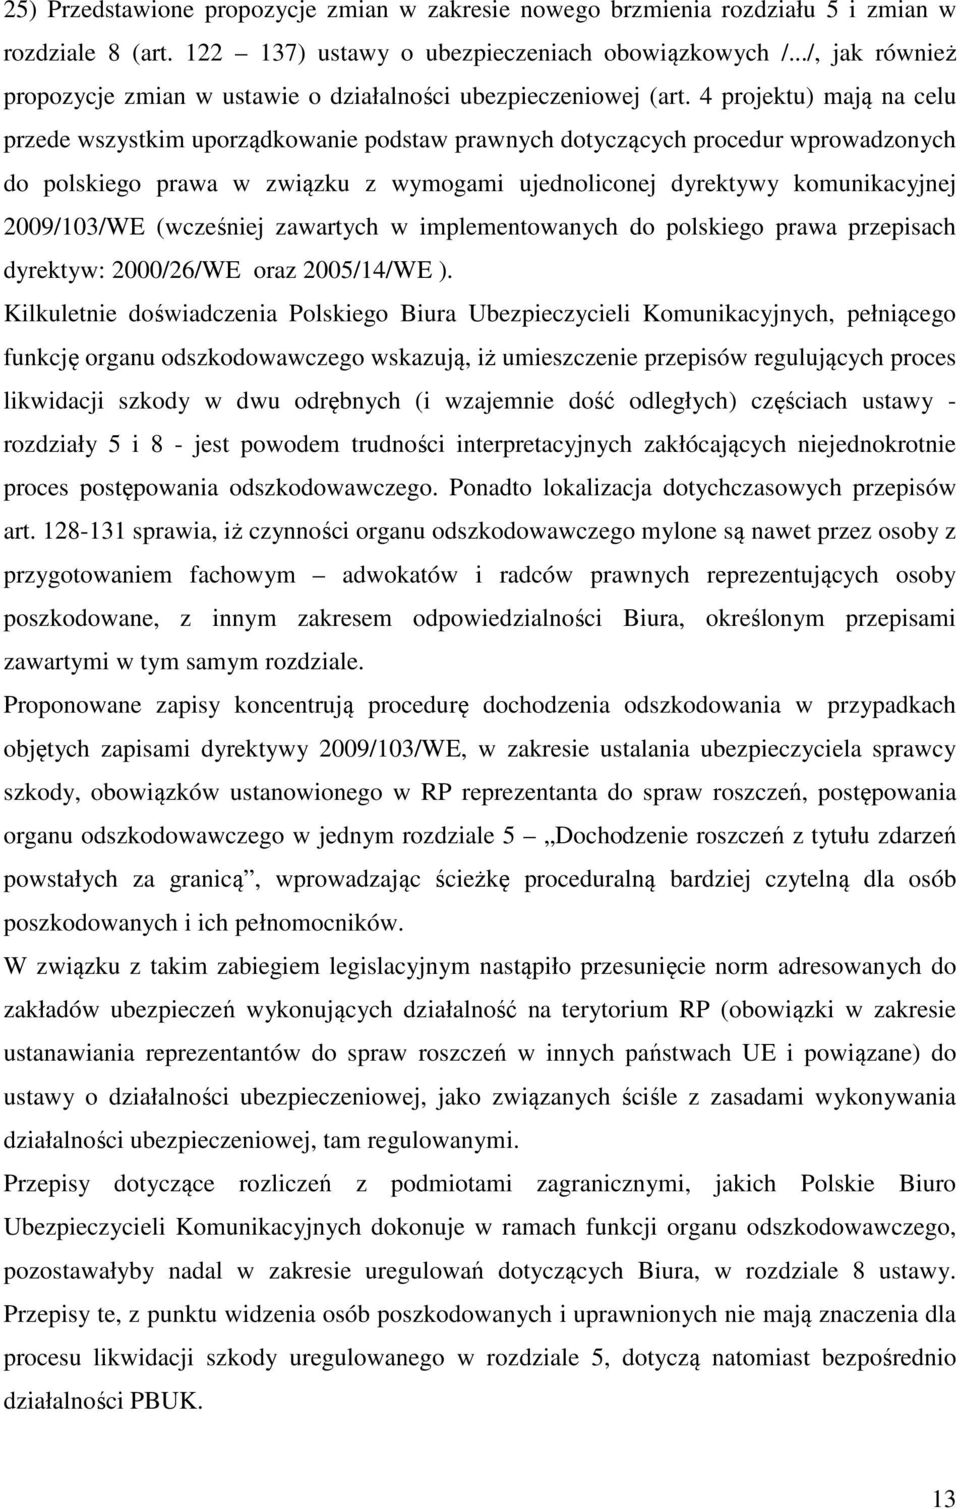 4 projektu) mają na celu przede wszystkim uporządkowanie podstaw prawnych dotyczących procedur wprowadzonych do polskiego prawa w związku z wymogami ujednoliconej dyrektywy komunikacyjnej 2009/103/WE